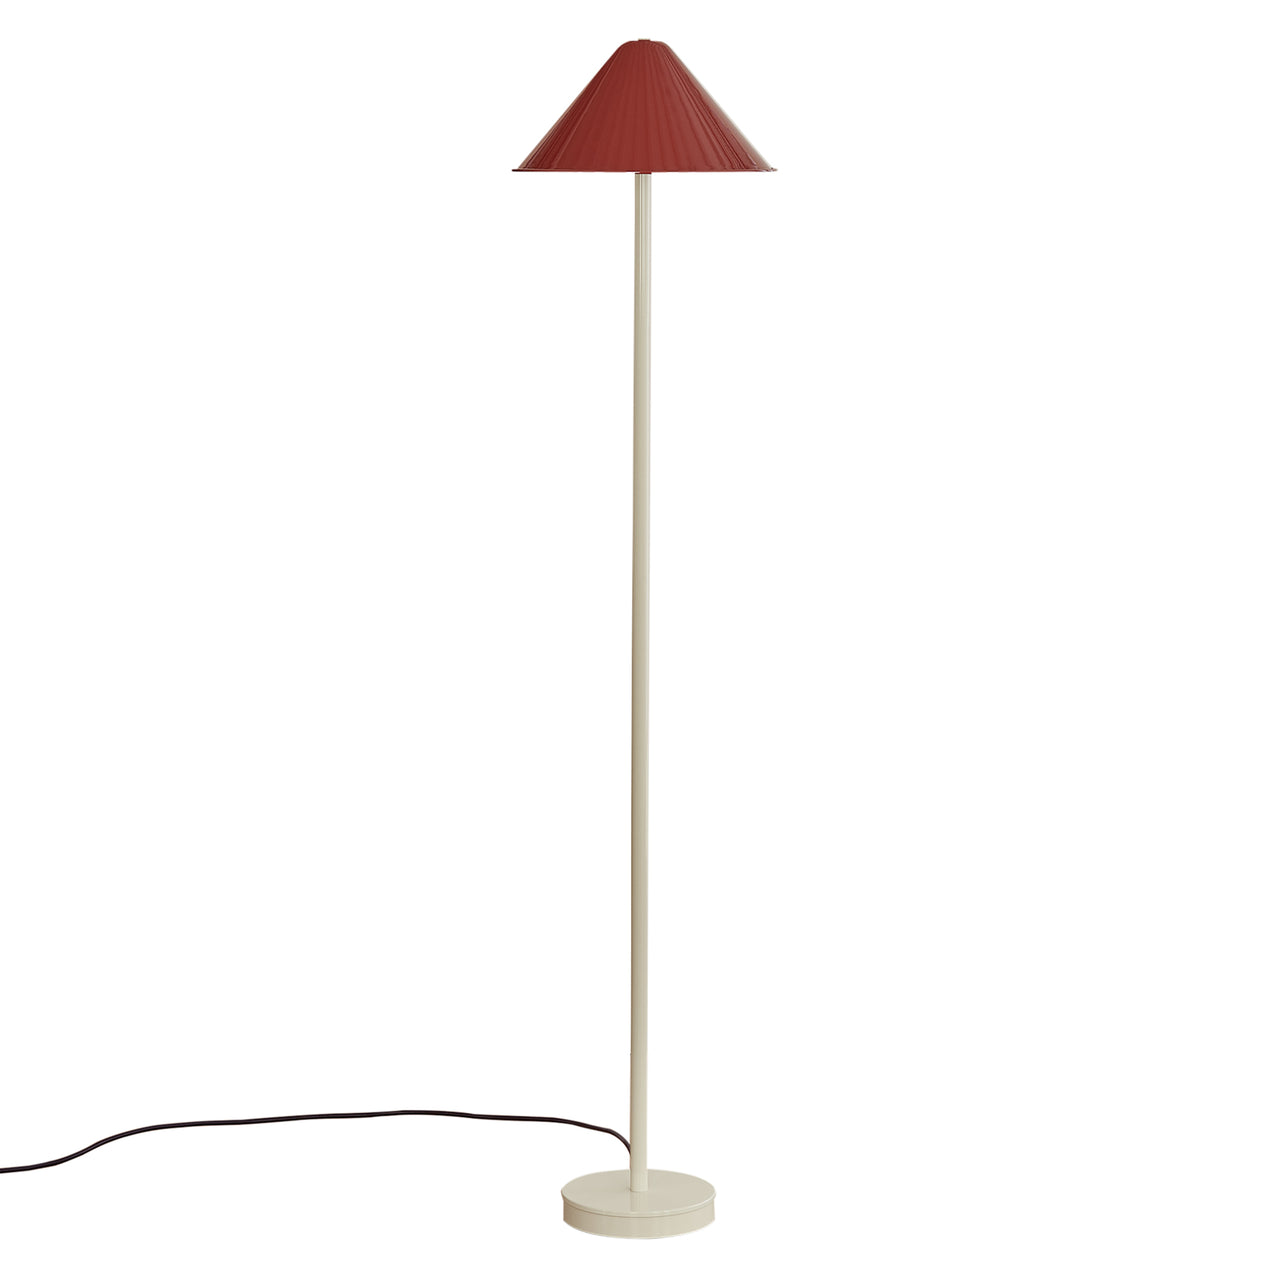 Tipi Floor Lamp: Oxide Red + Bone